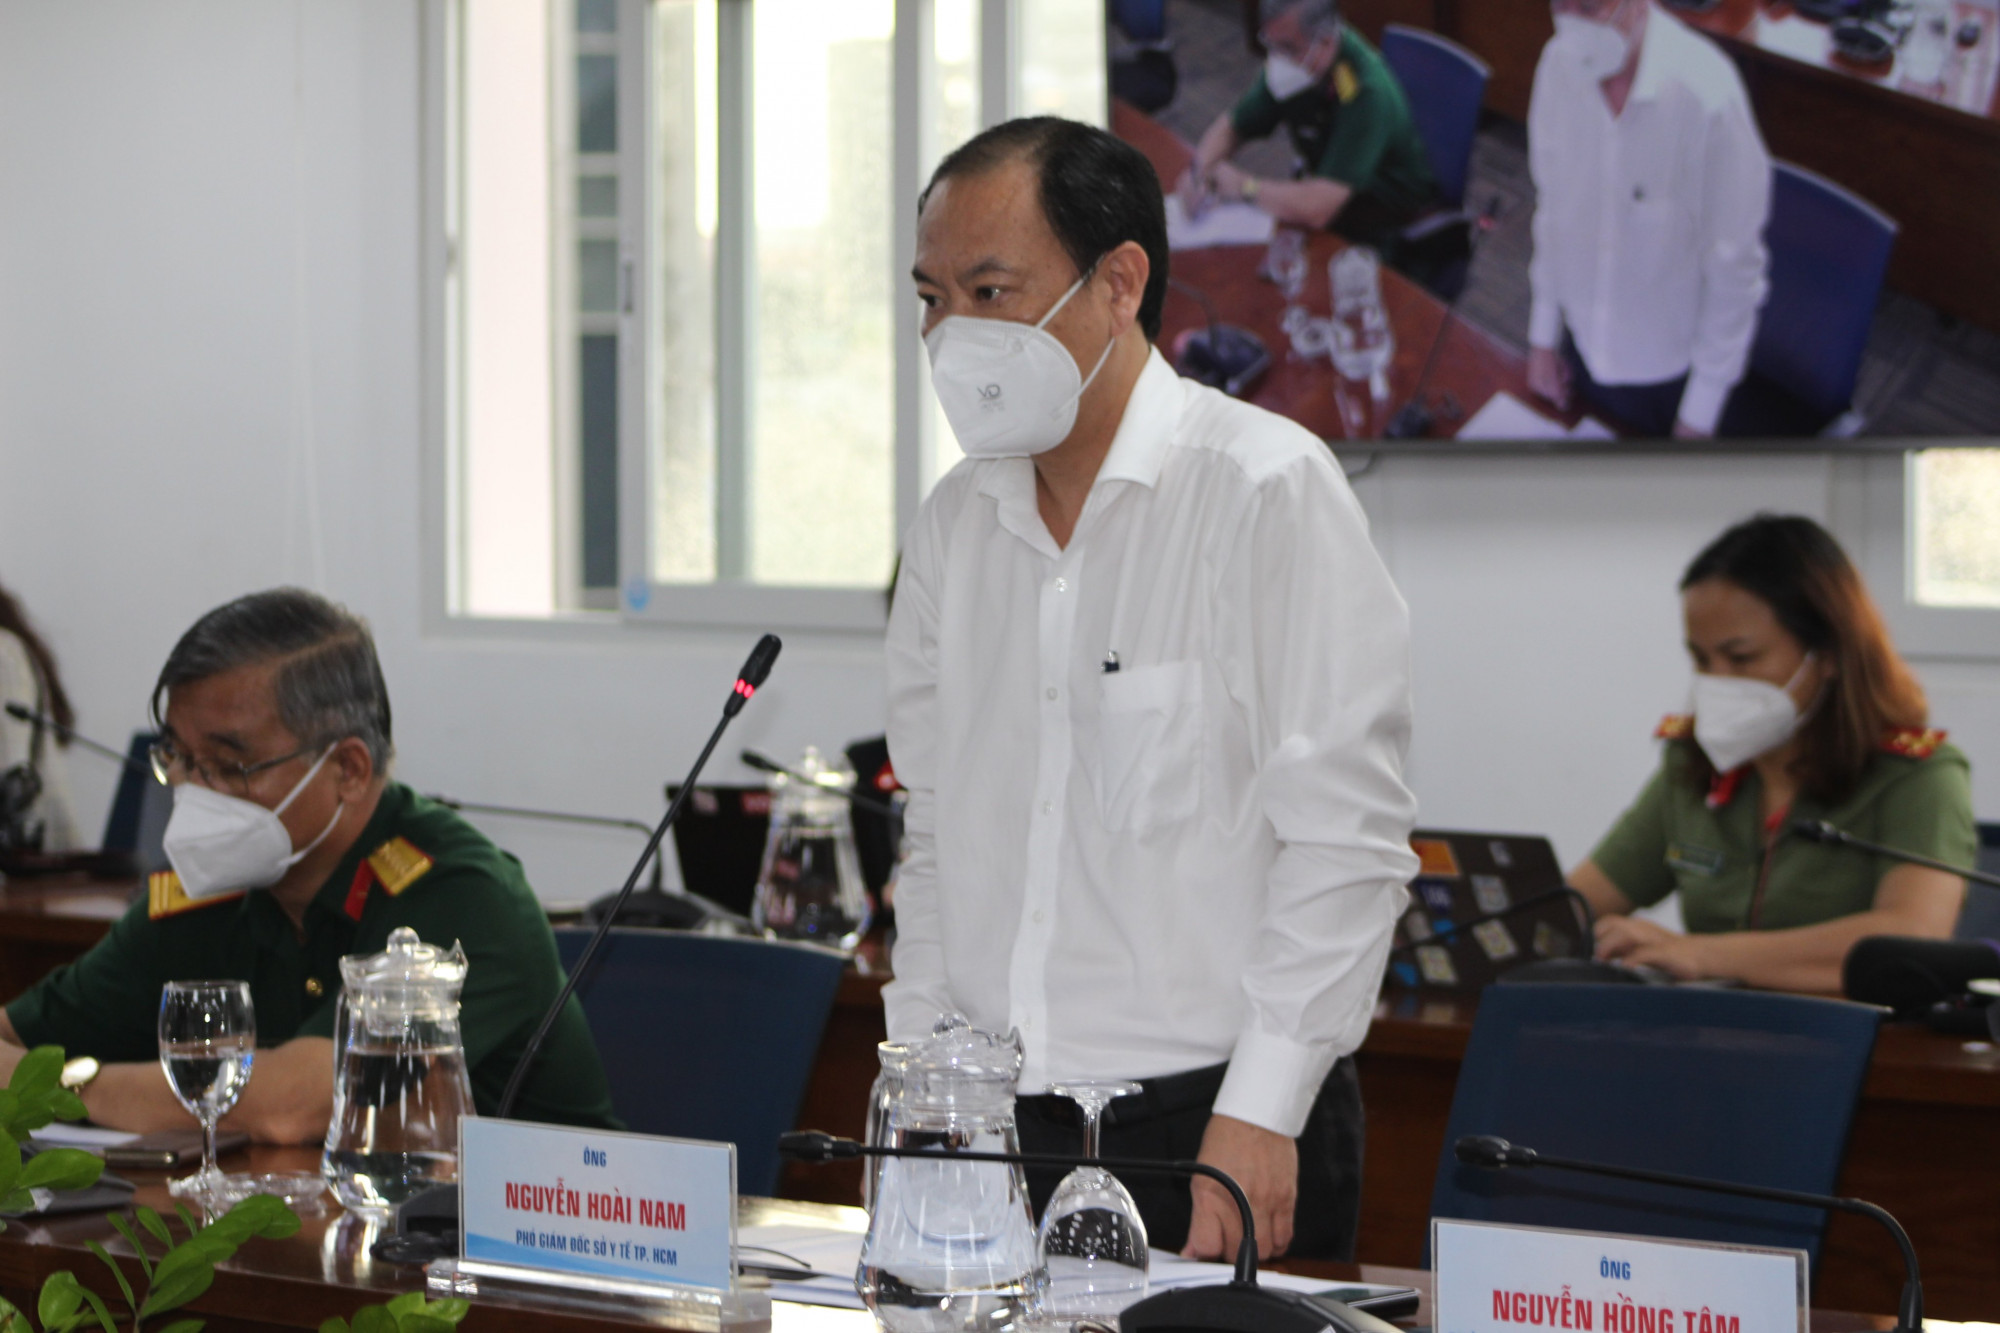 Ông Nguyễn Hoài Nam - Phó giám đốc Sở Y tế TPHCM thông tin tại buổi họp báo